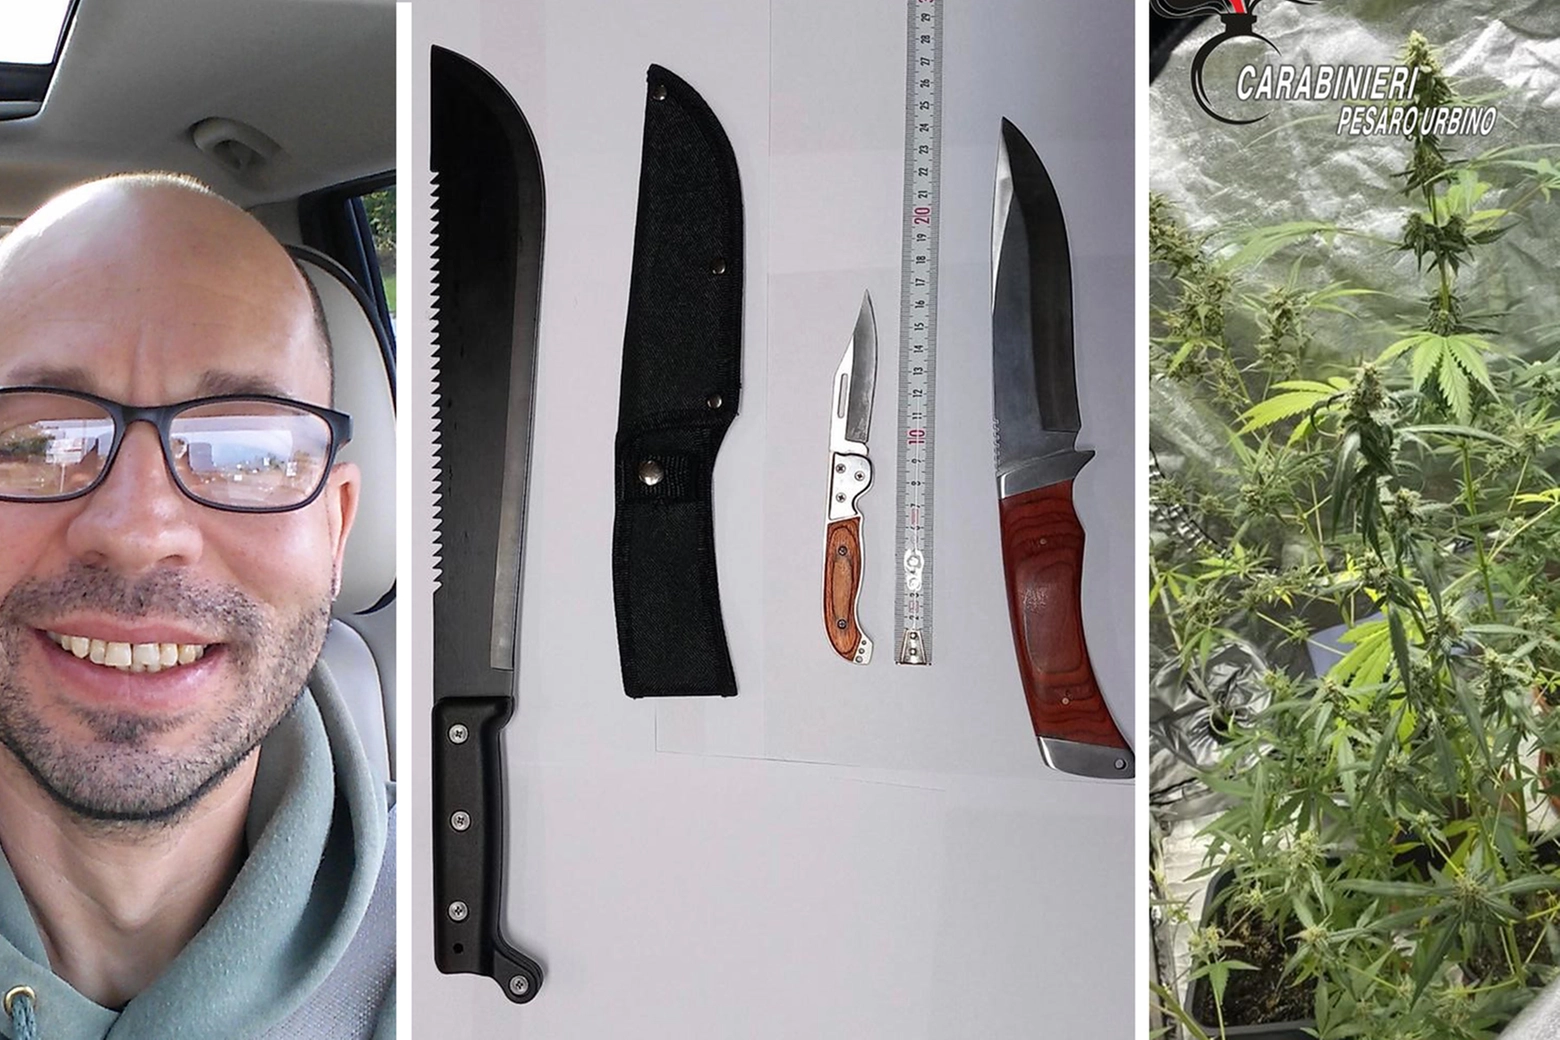 Federico Marcelli catturato: dalle indagini spuntano anche un machete, un pugnale e un coltello a serramanico. Nel video dei carabinieri si vede anche un piantagione di marijuana